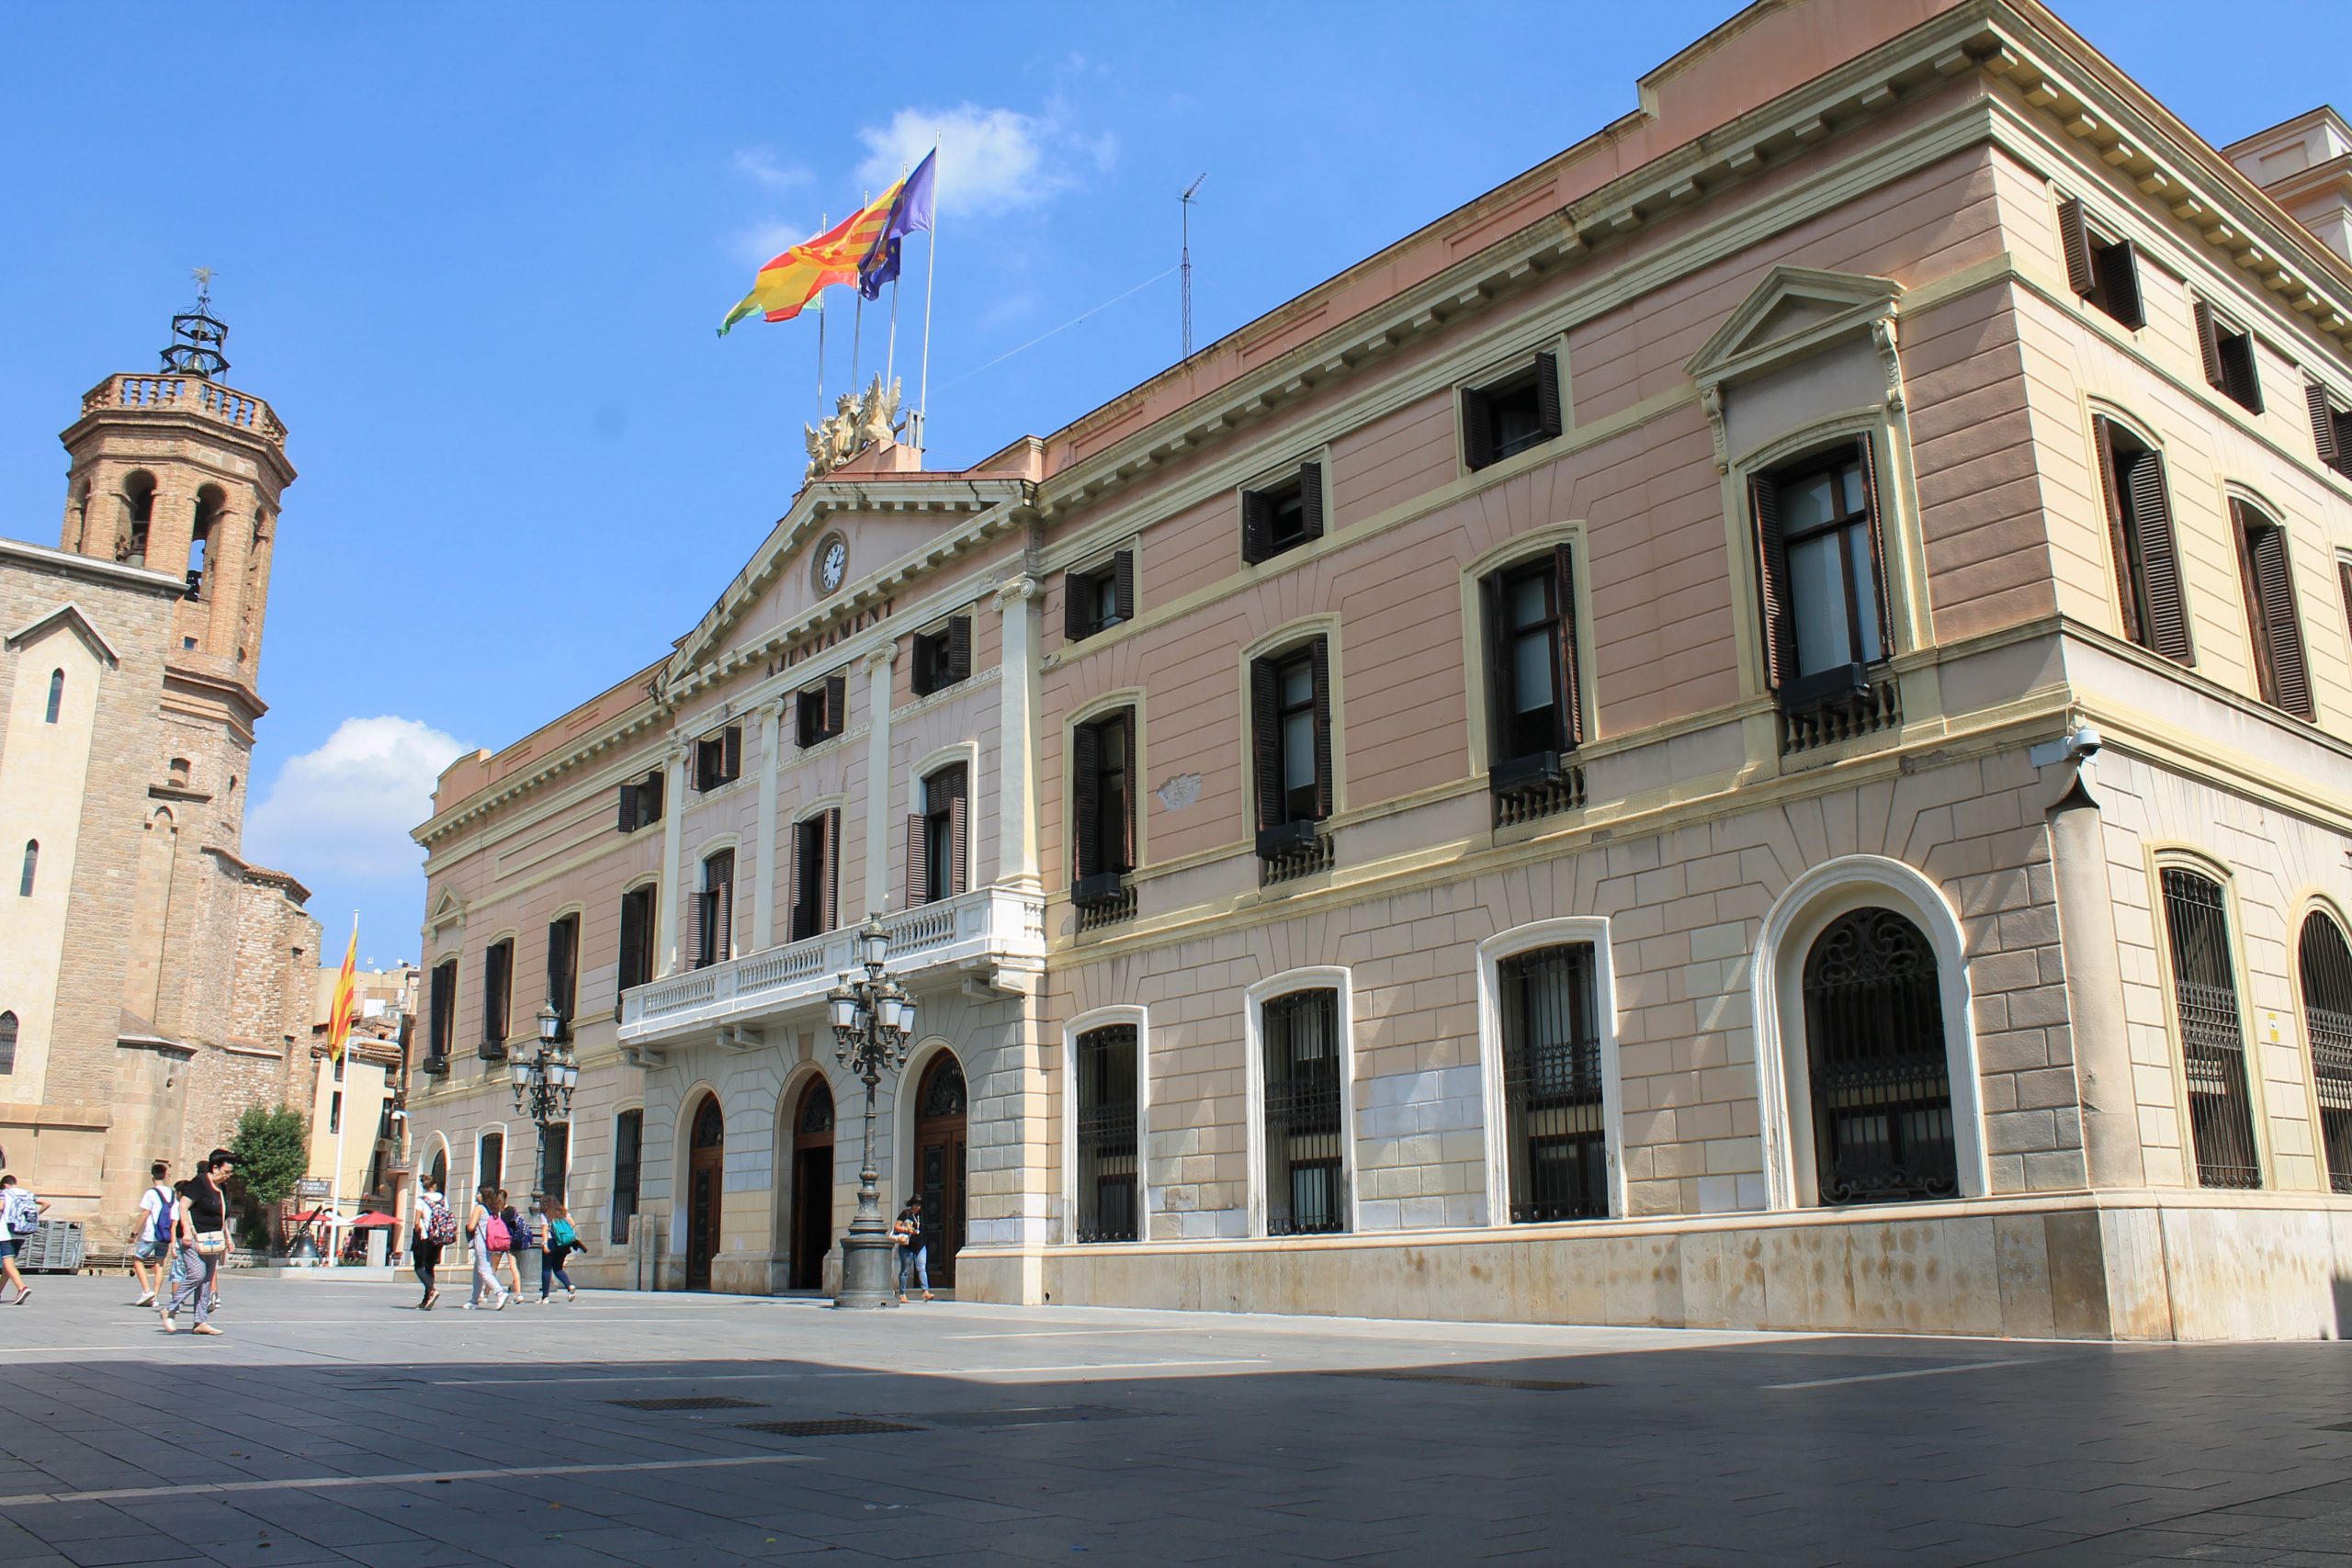 L’Ajuntament de Sabadell aprova el reconeixement a l’exili i a la diàspora colombiana a la ciutat